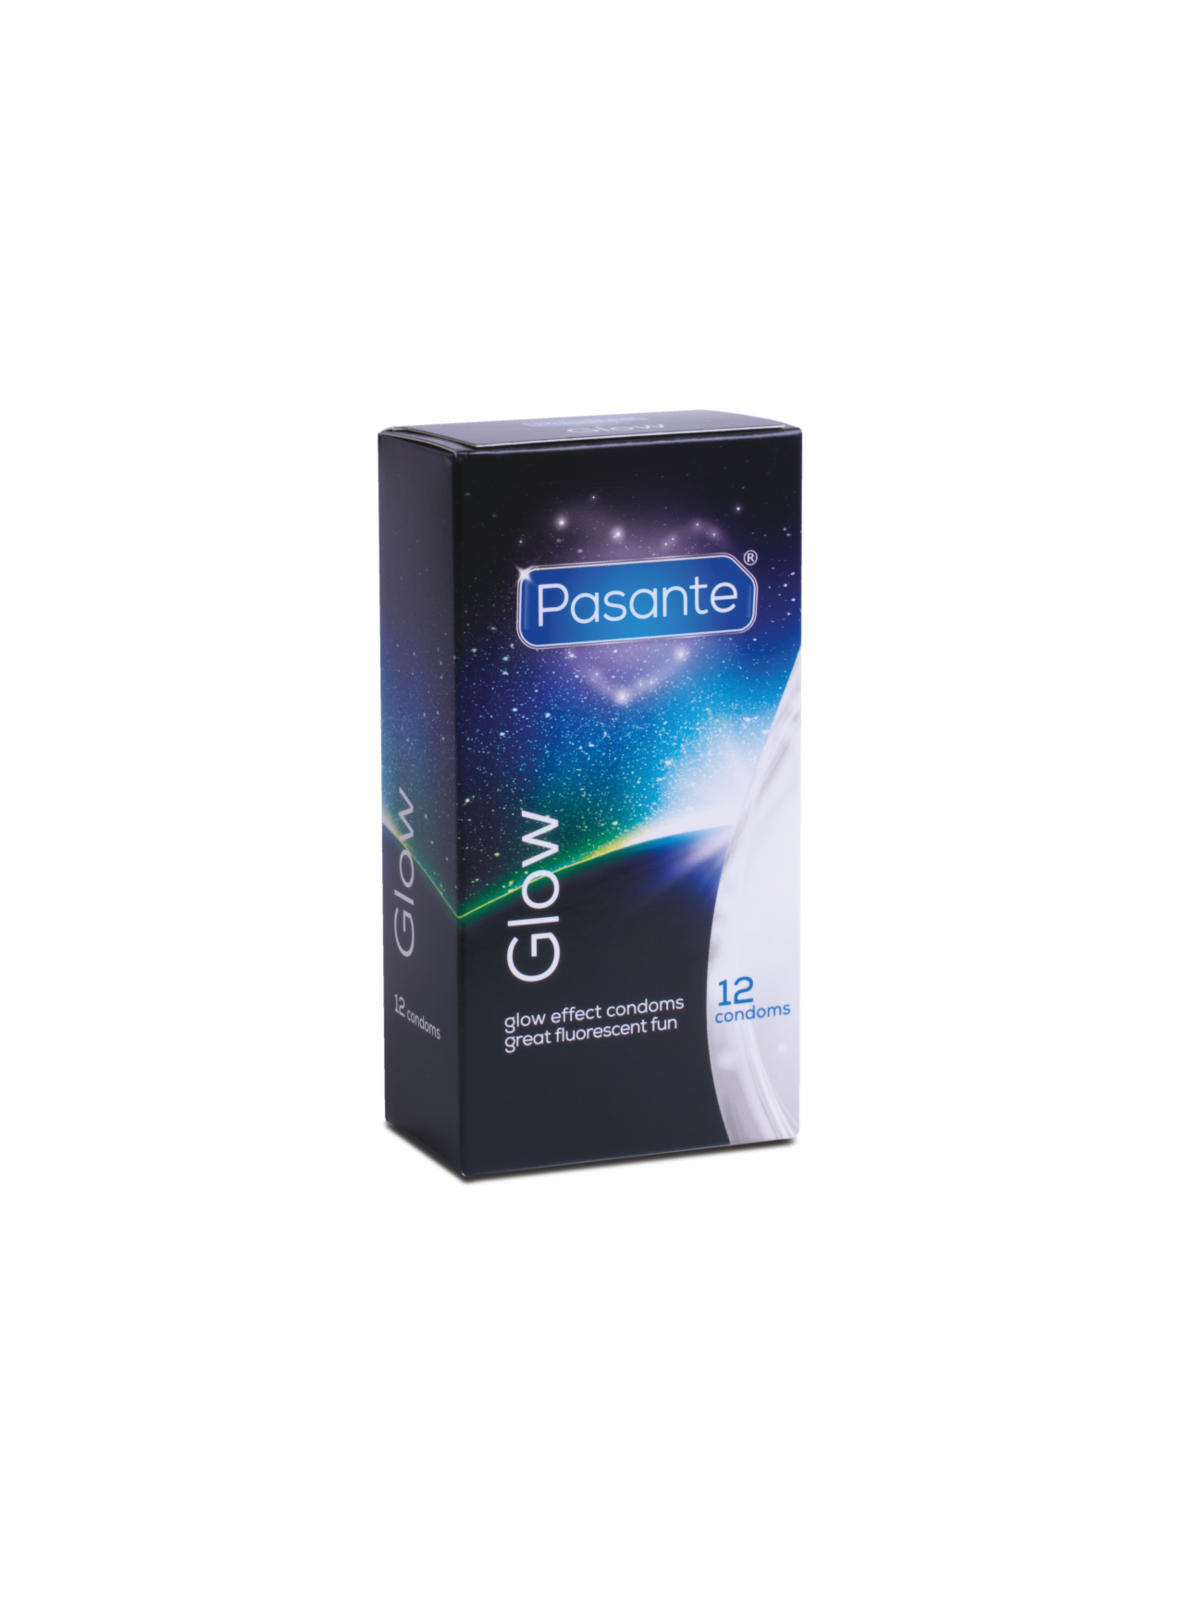 Pasante Brillo En La Oscuridad - Comprar Condones especiales Pasante - Preservativos especiales (1)